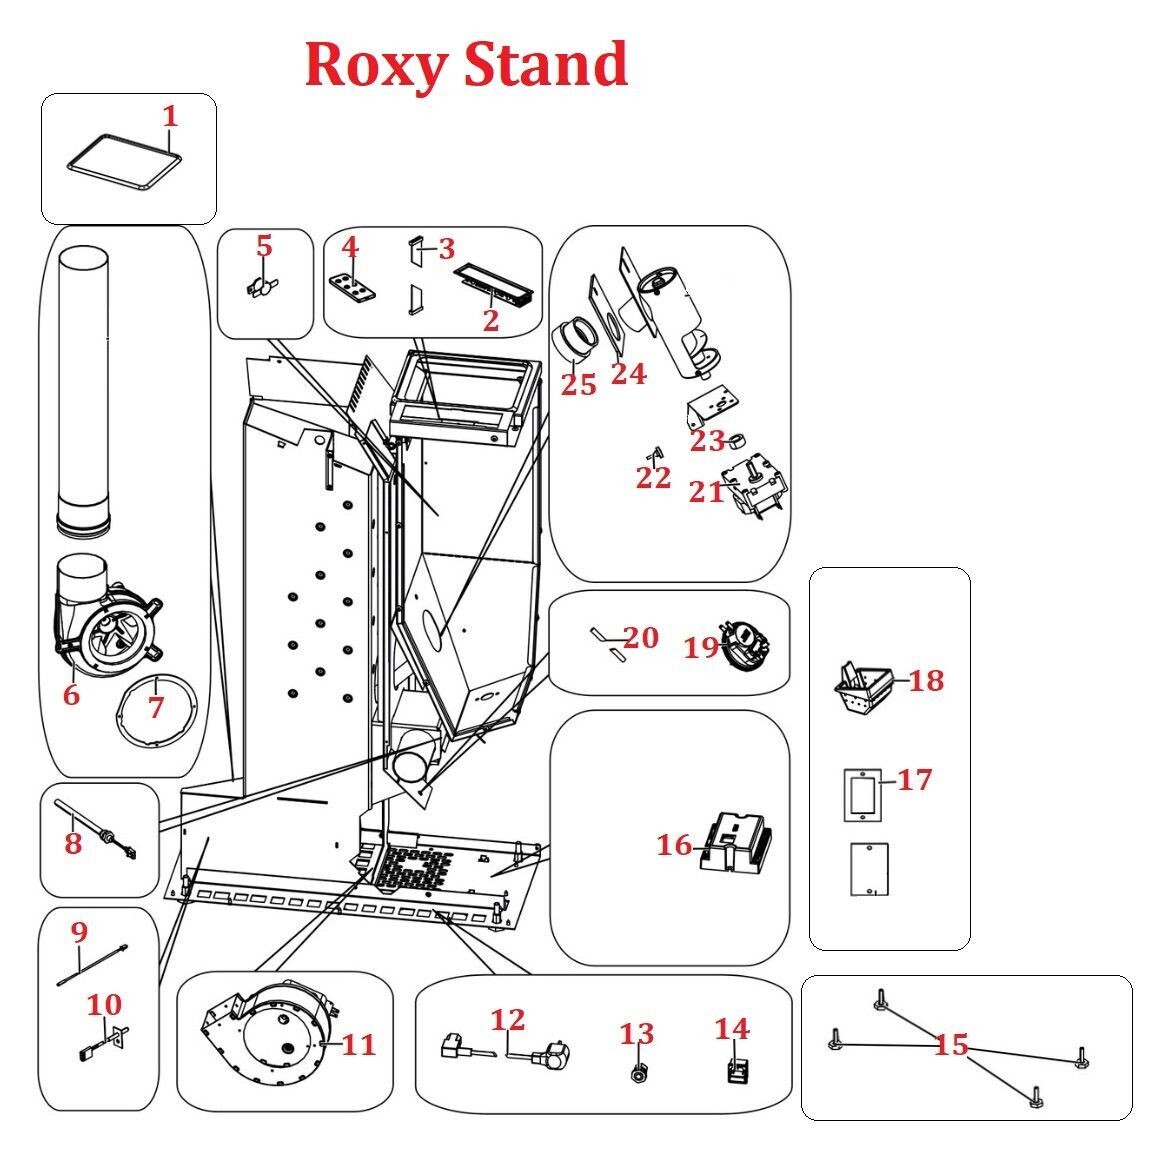 Roxy Stand